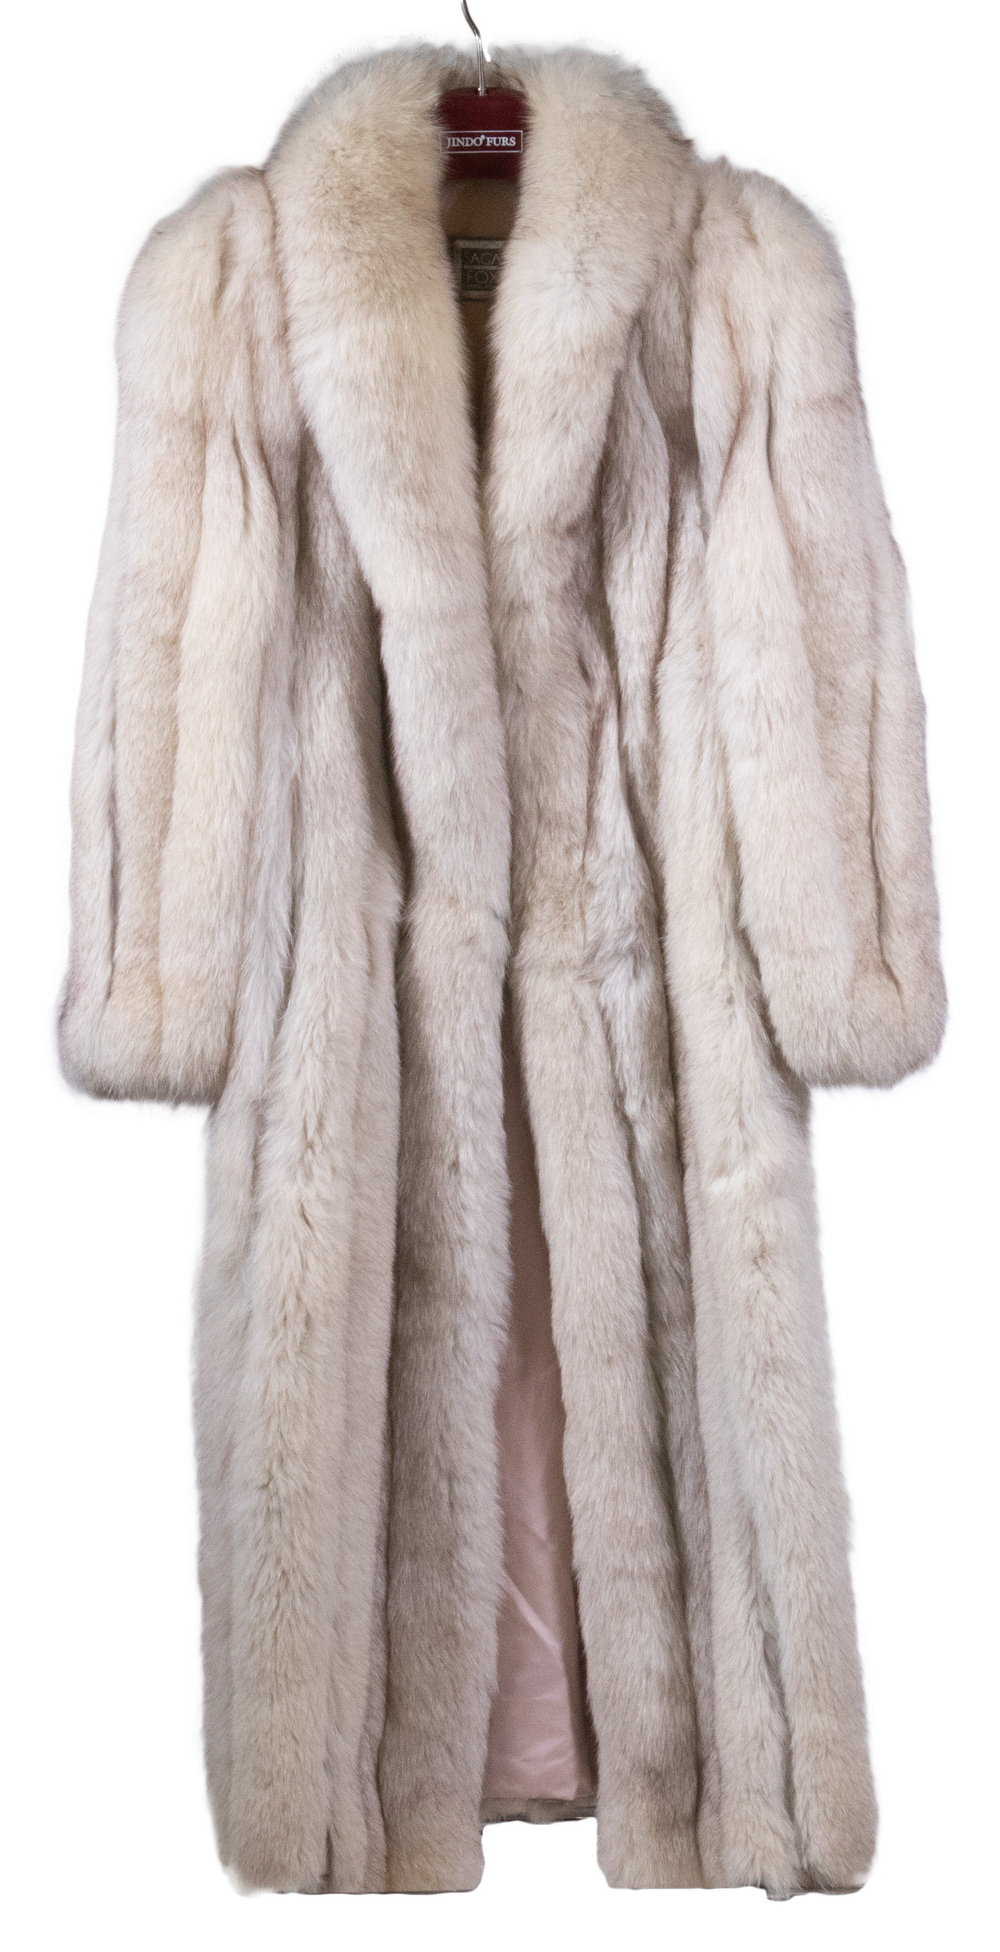 FUR COAT Full Length Silver Fox Coat